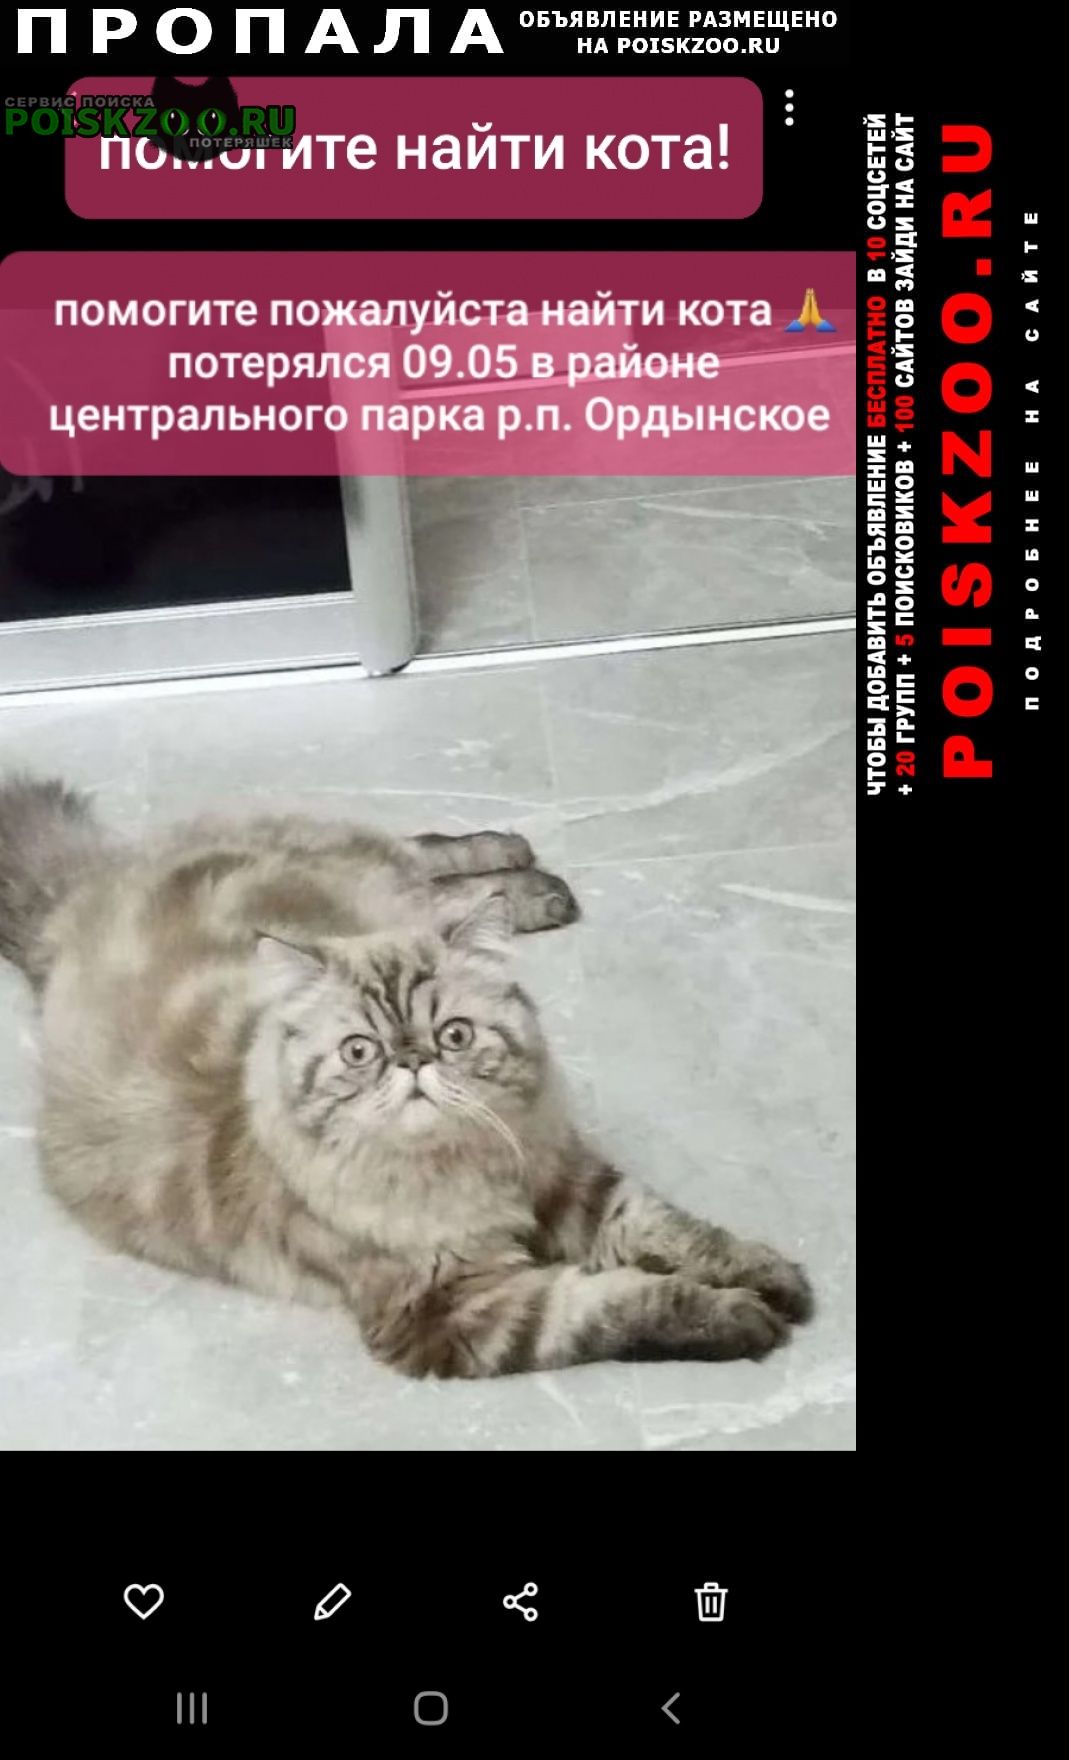 Пропал кот персидский кот Ордынское